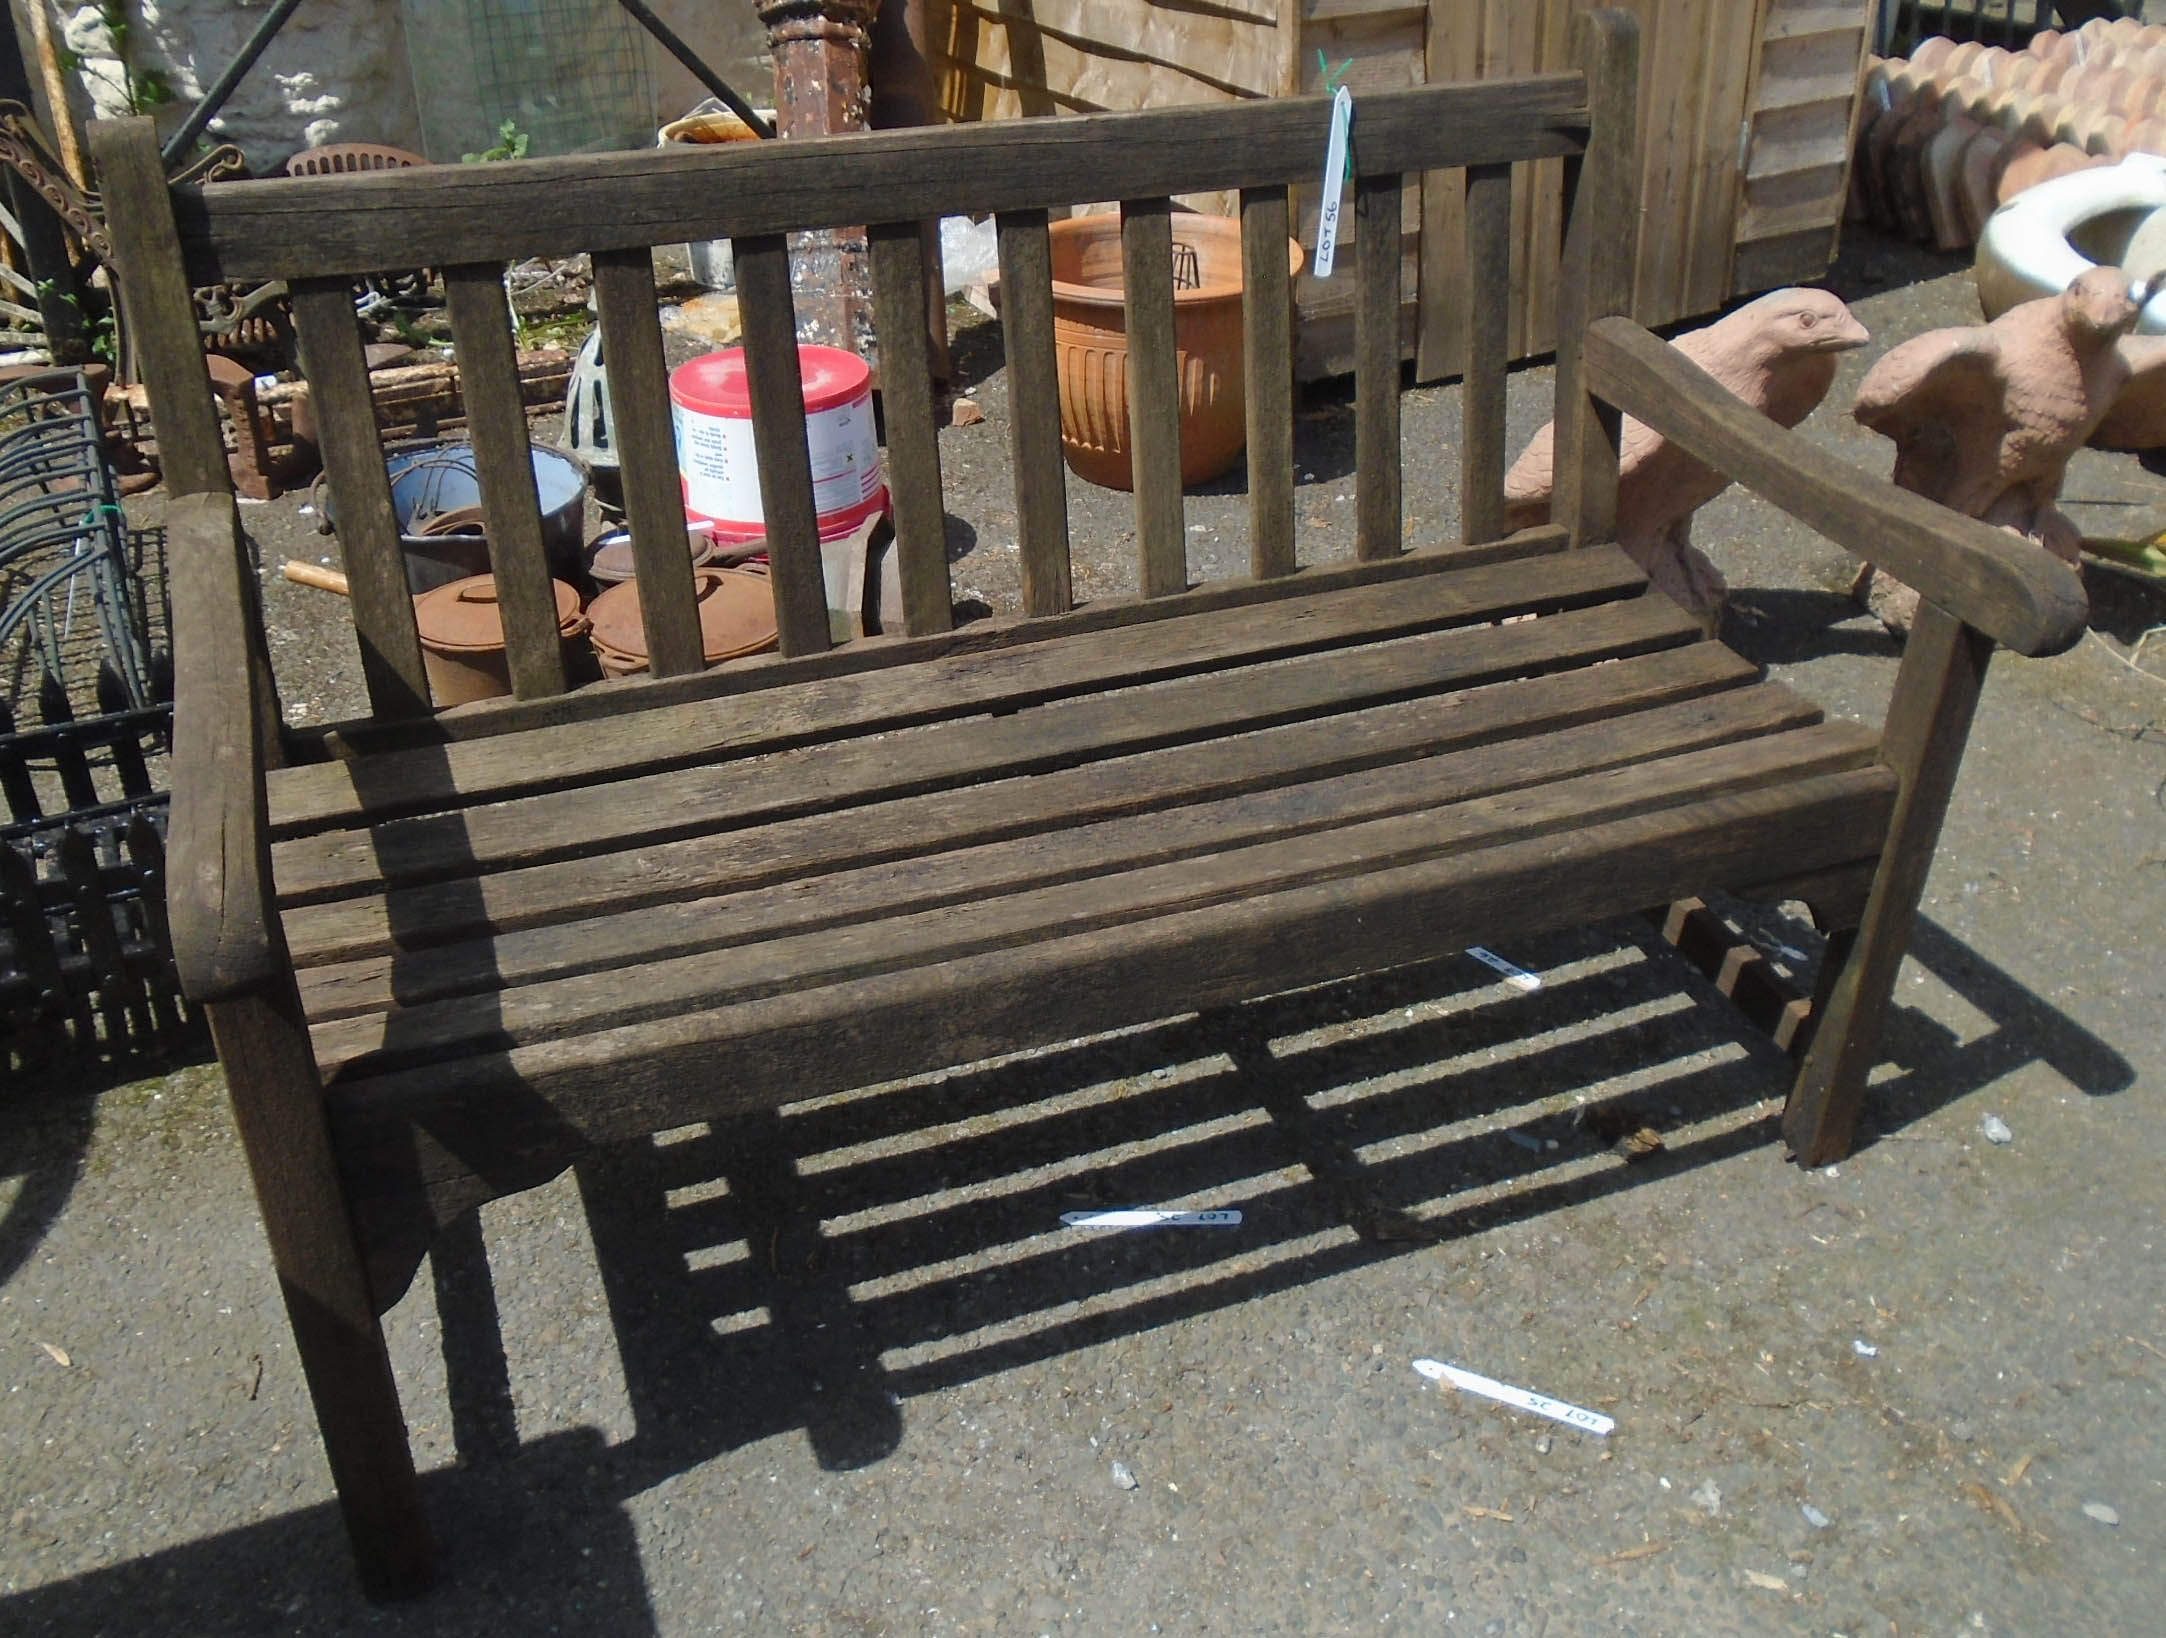 A 4' slatted garden bench